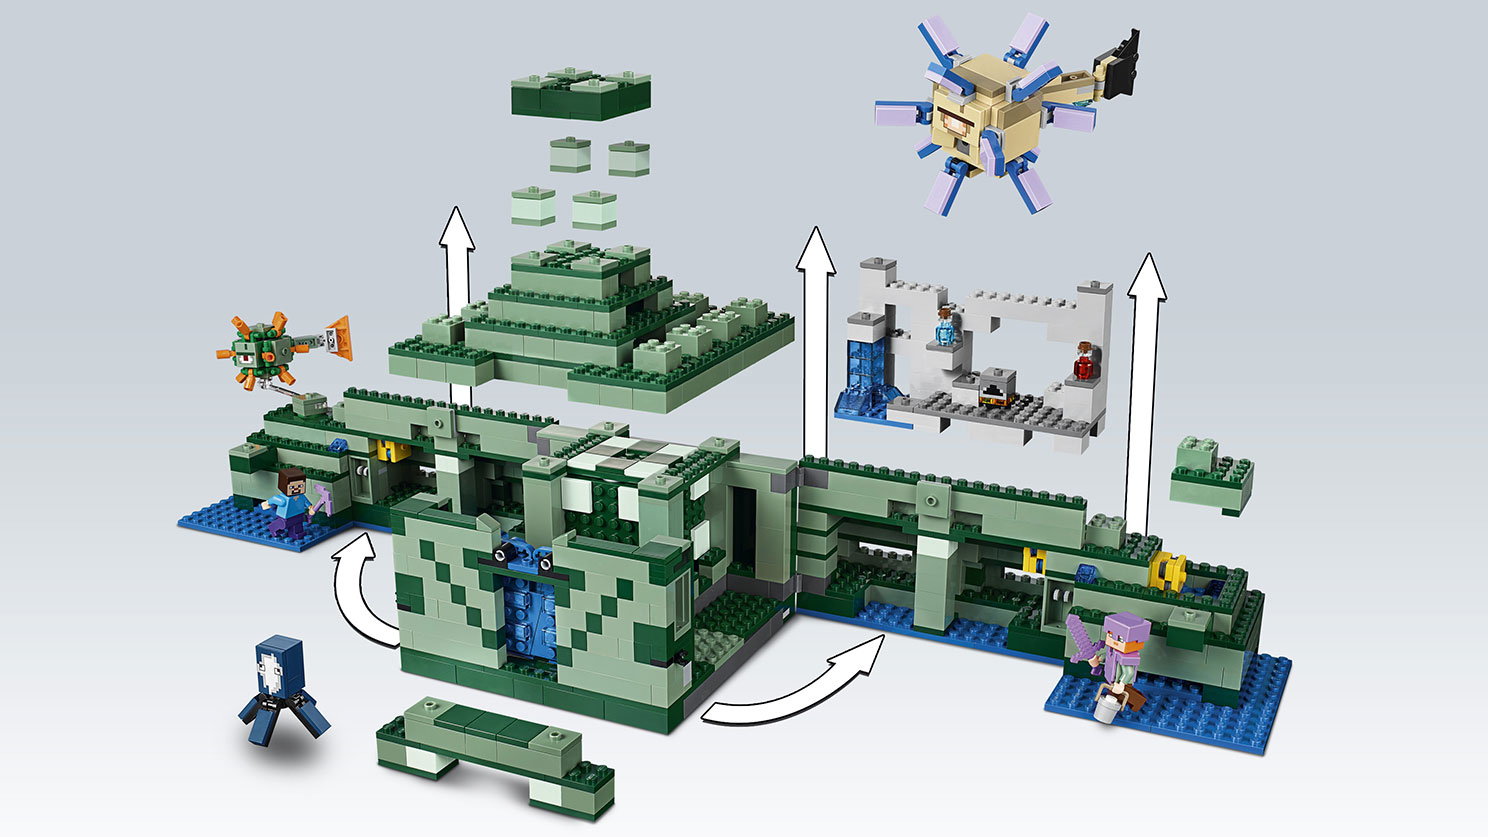 海底遺跡 21136 - レゴ®マインクラフト セット - LEGO.comキッズ